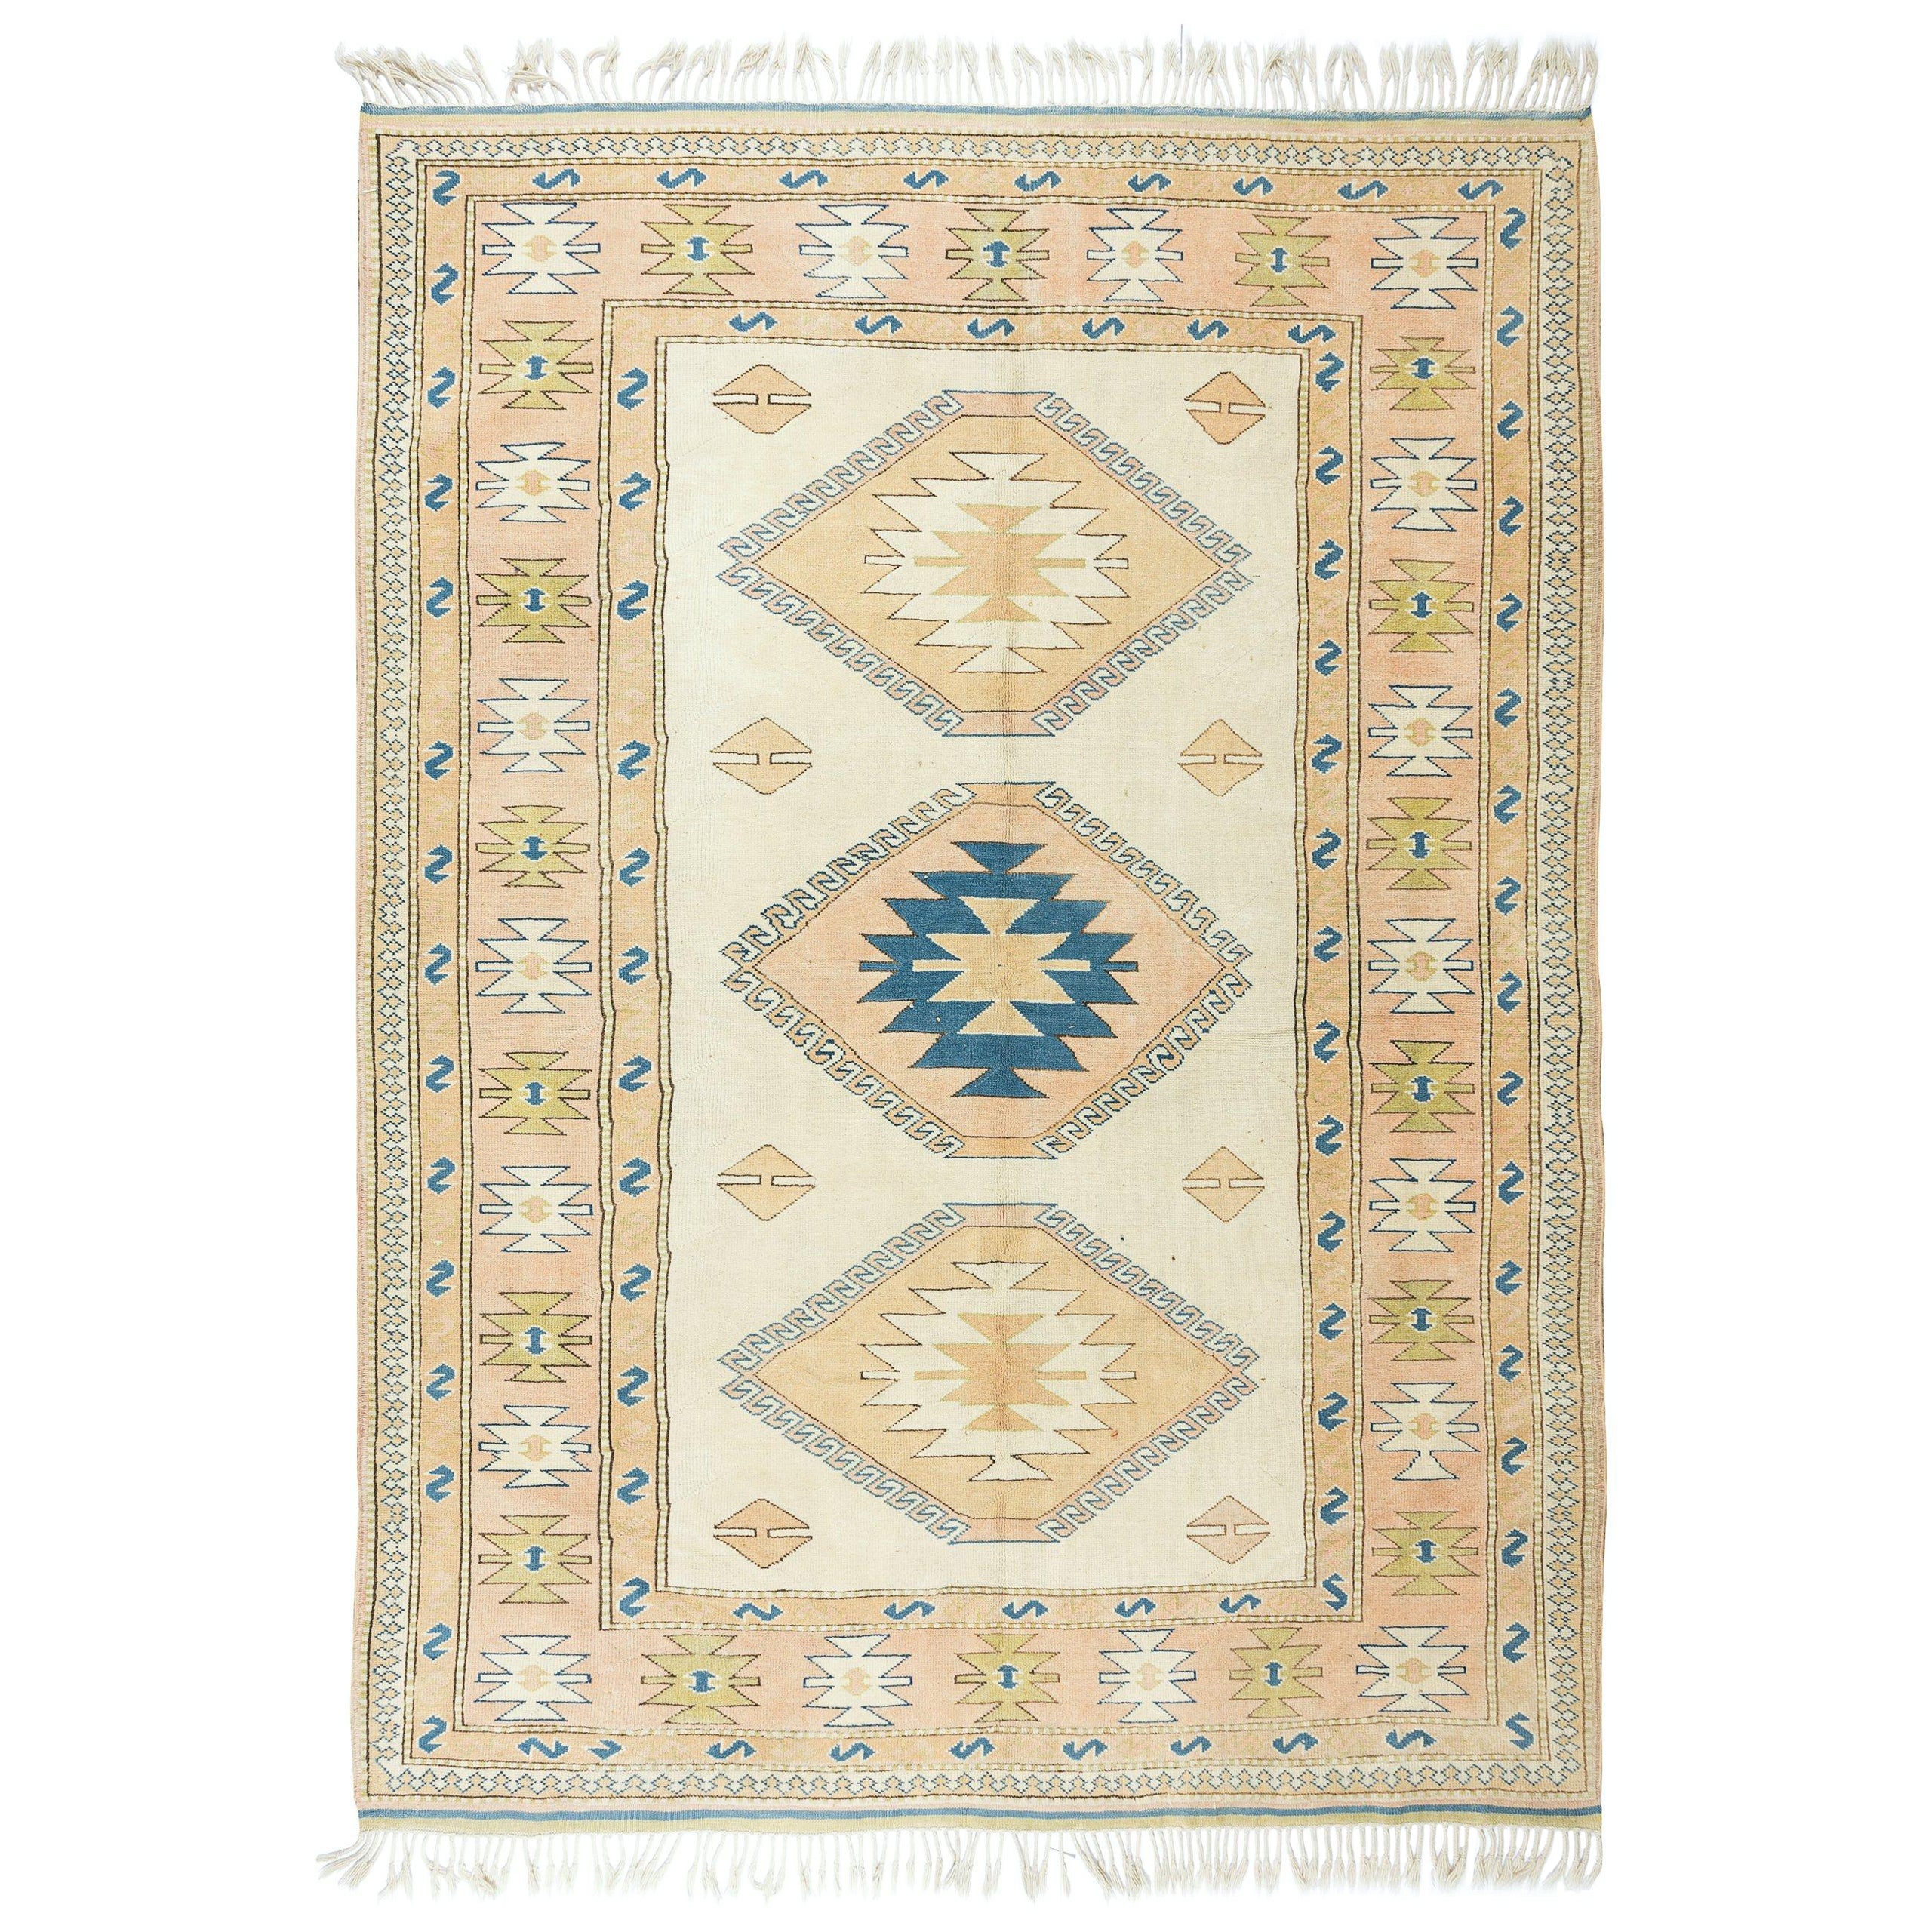 6.8x9.2 Ft Zeitgenössischer handgefertigter türkischer Teppich mit dreifachem geometrischem Medaillon-Design